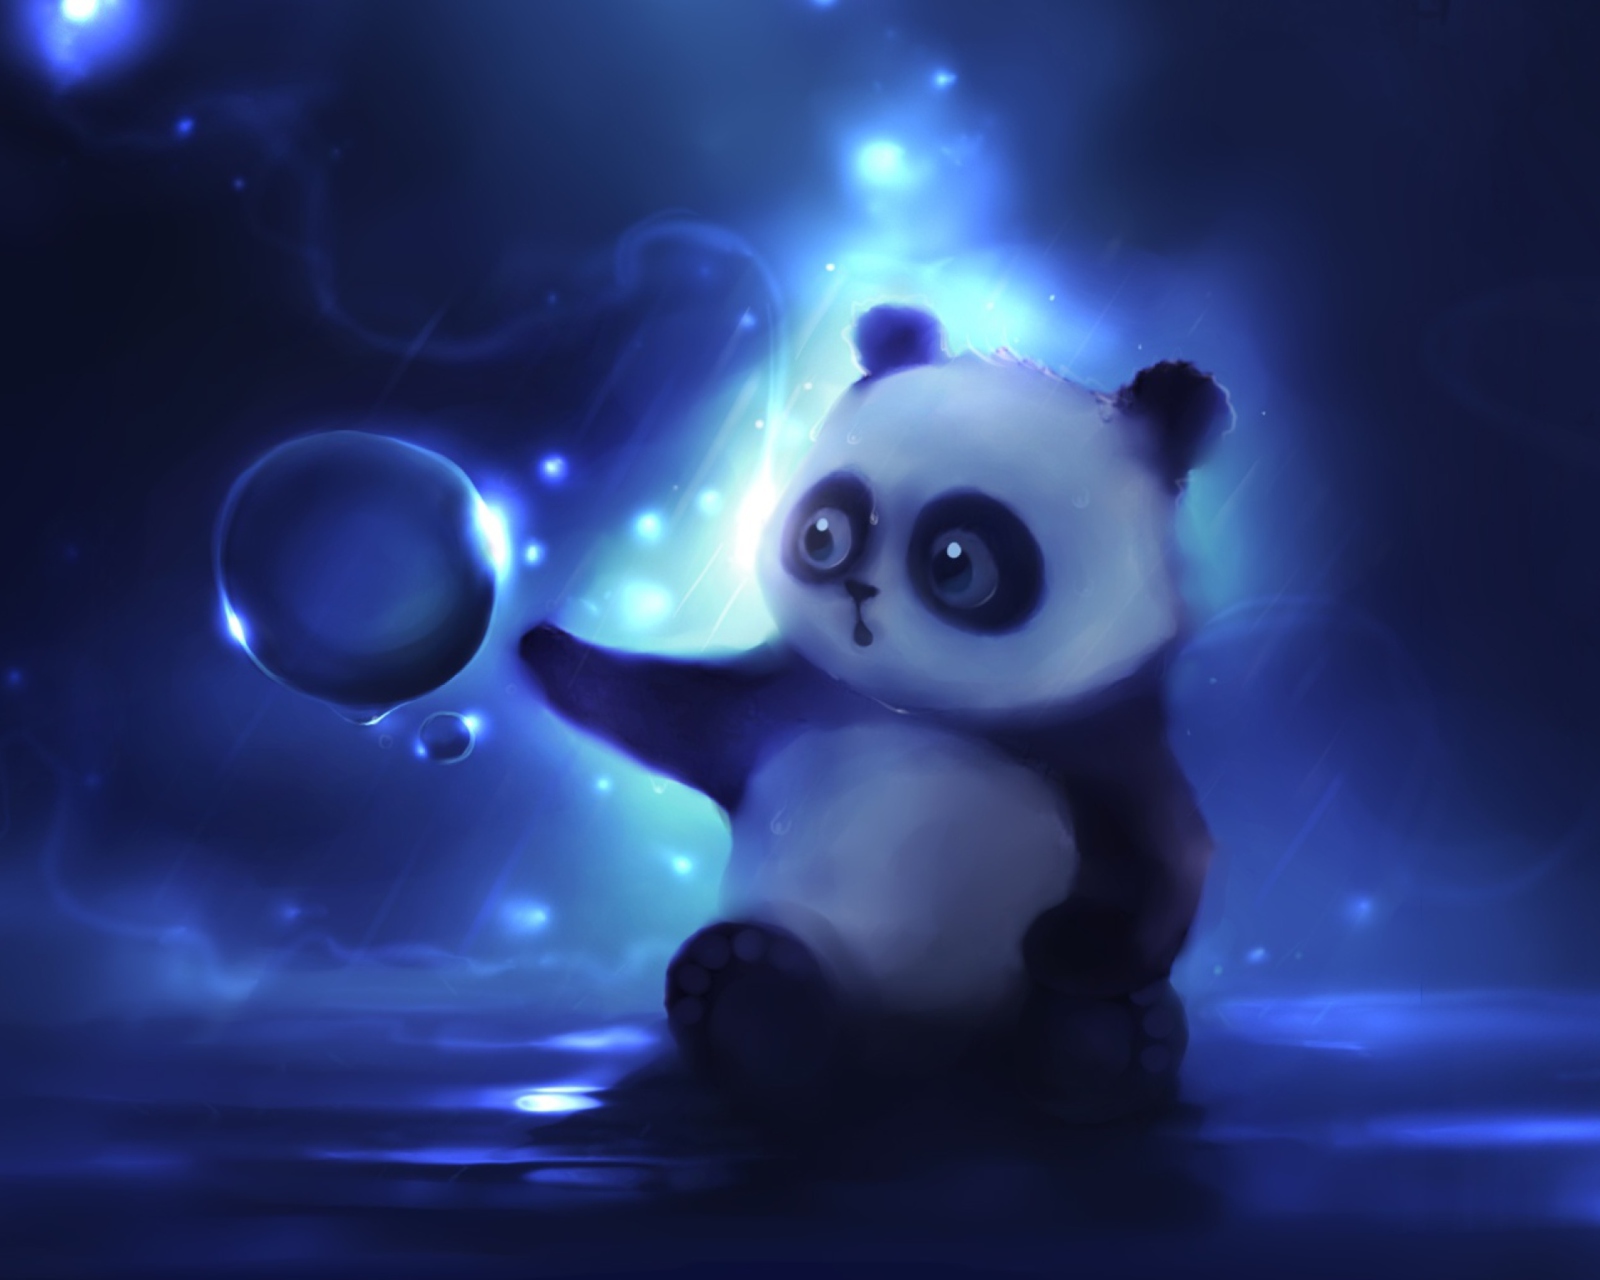 Das Curious Panda Painting Wallpaper 1600x1280